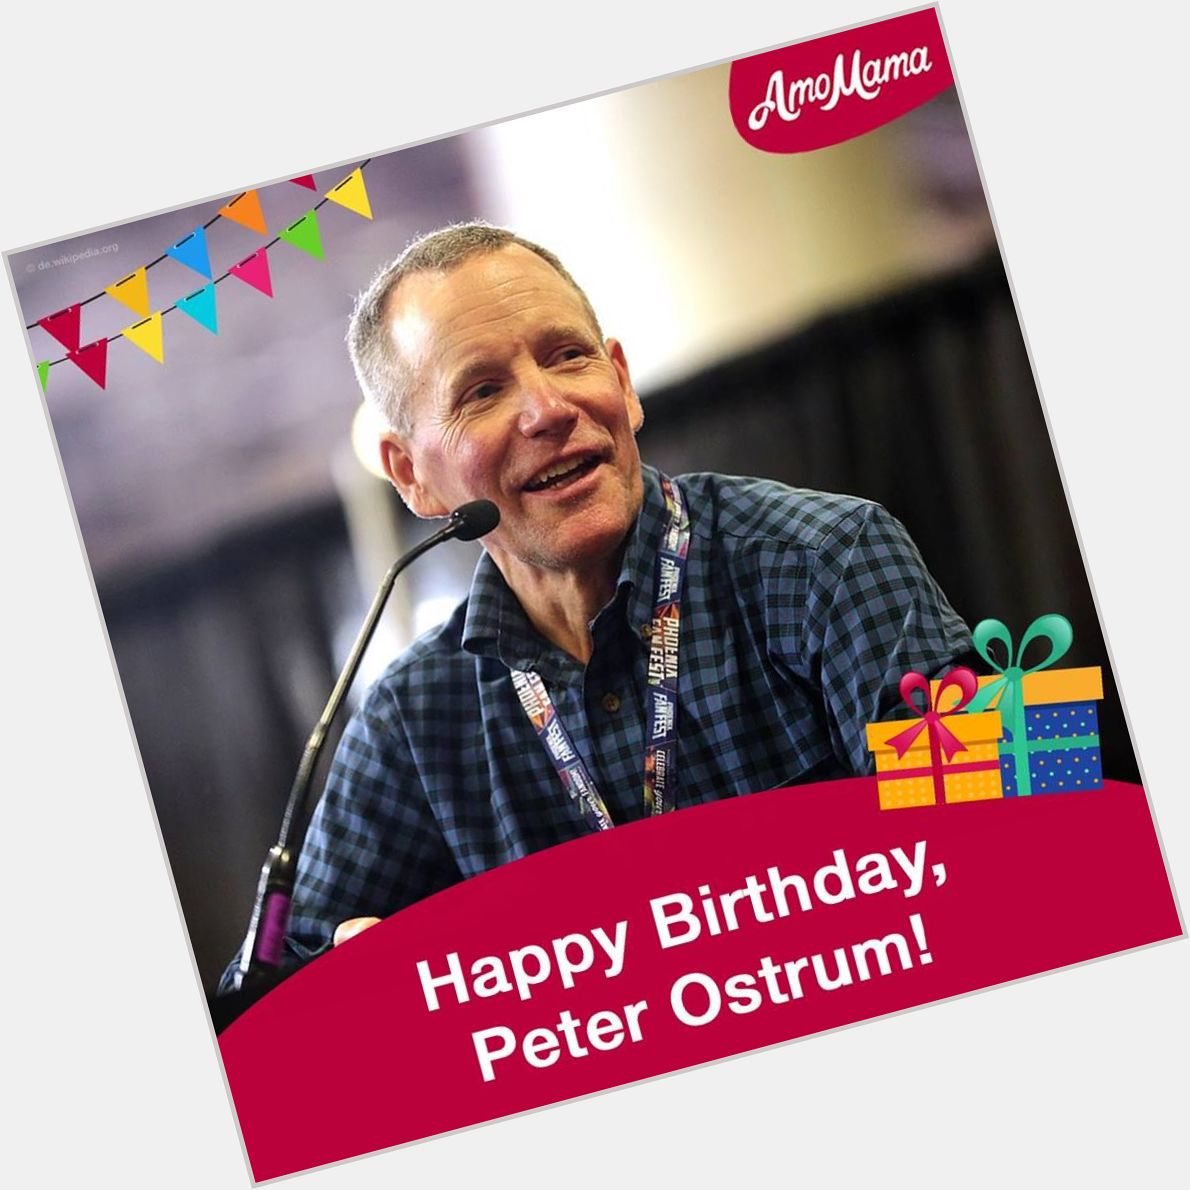  Happy Birthday, Peter Ostrum! 